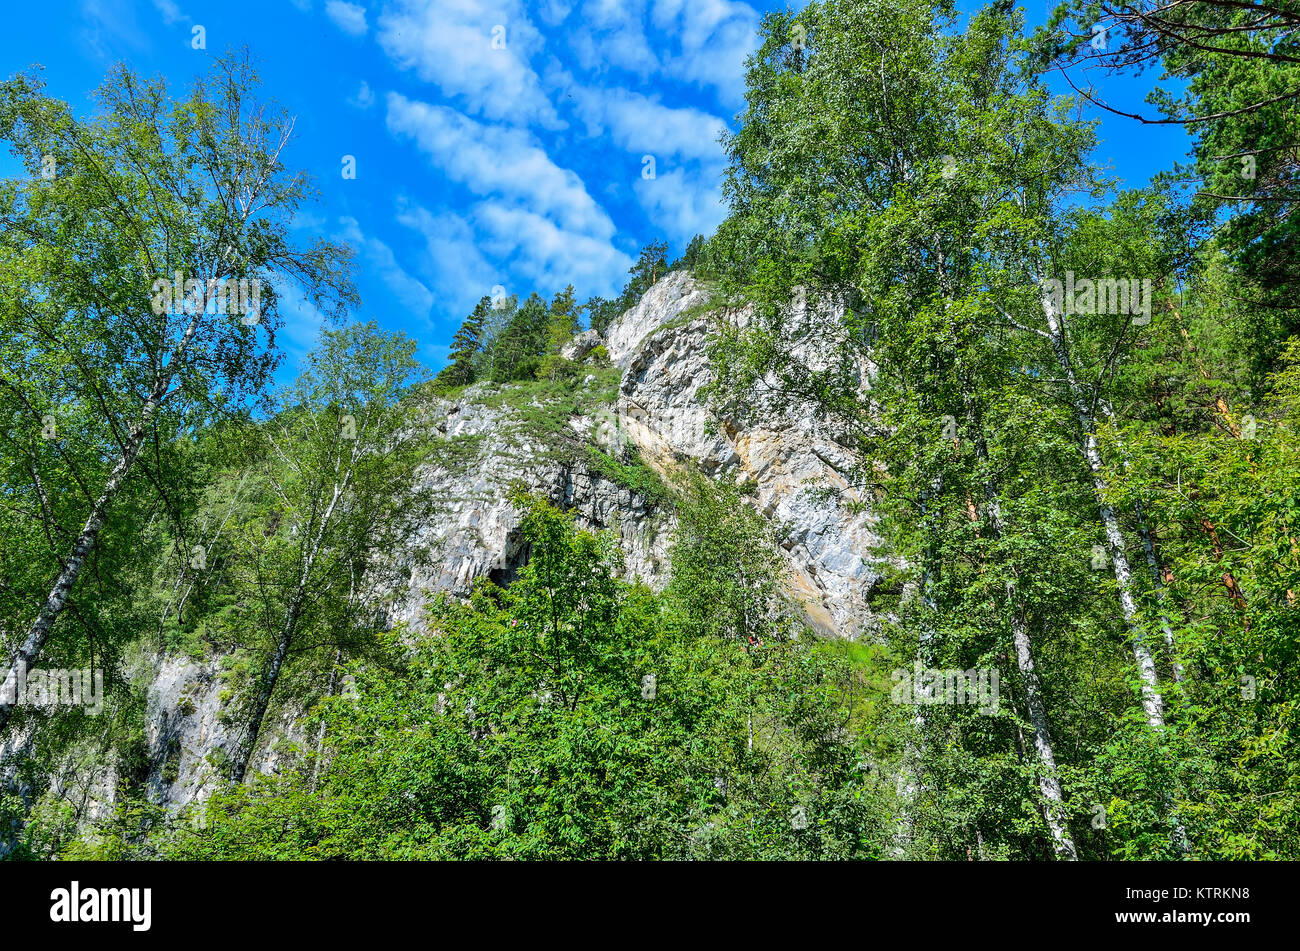 Tavda grotte (tavdinskiye peshchery) - montagna carsica massiccio con una estesa catena di grotte, punto di riferimento delle montagne di Altai, Russia, Siberia Foto Stock